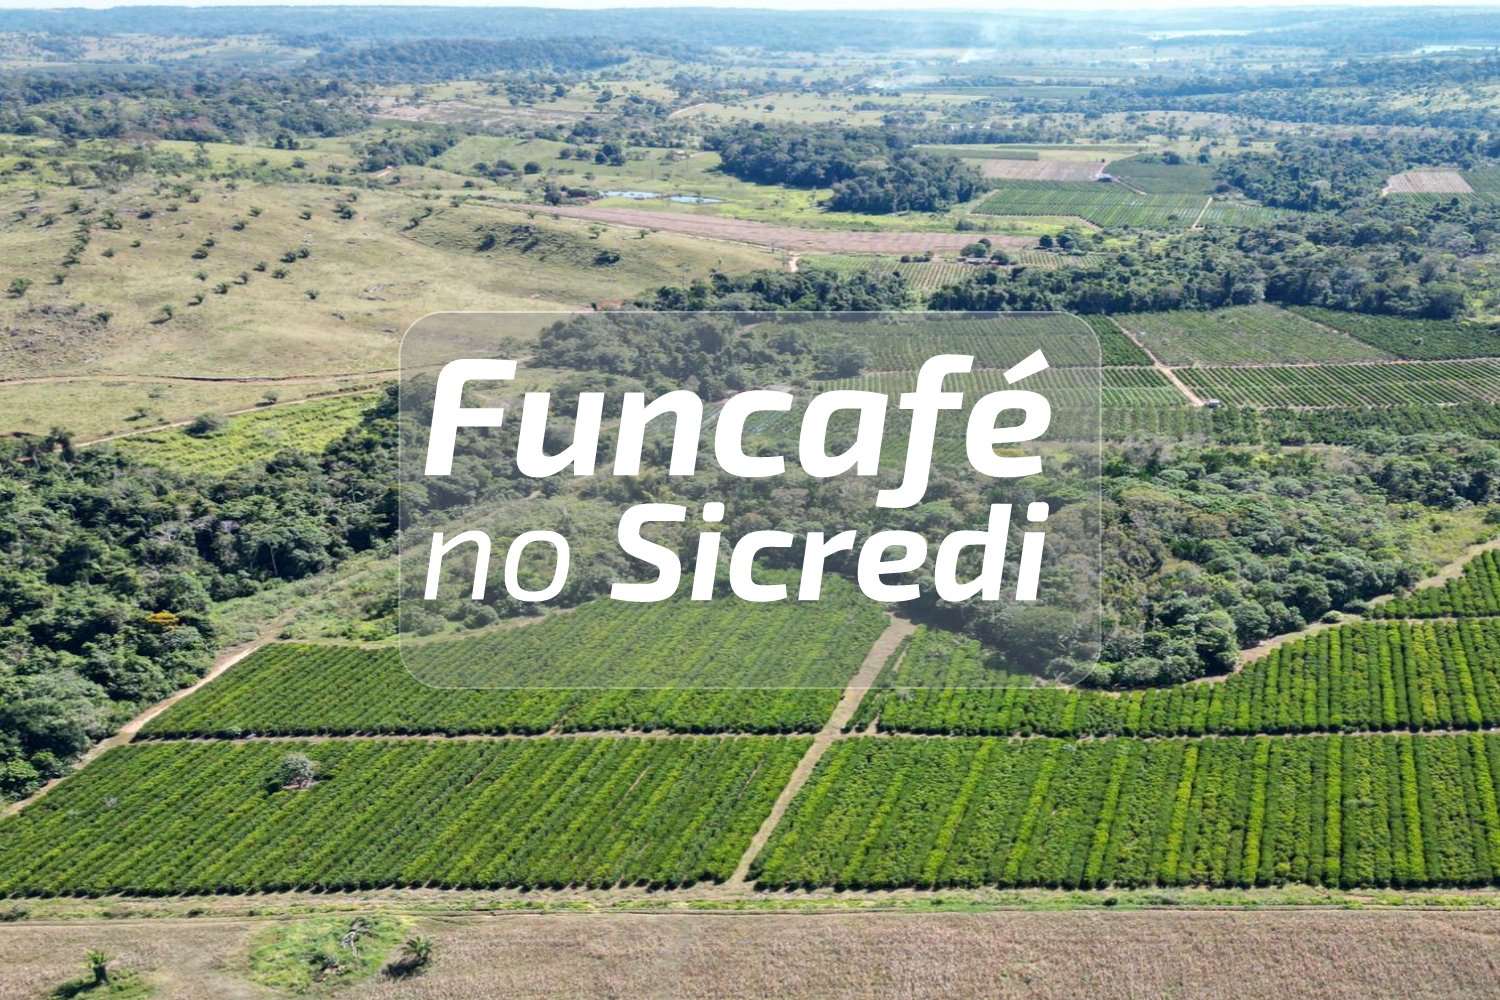 Cafeicultura: Veja como acessar os recursos do Funcafé através do Sicredi em Rondônia e Mato Grosso